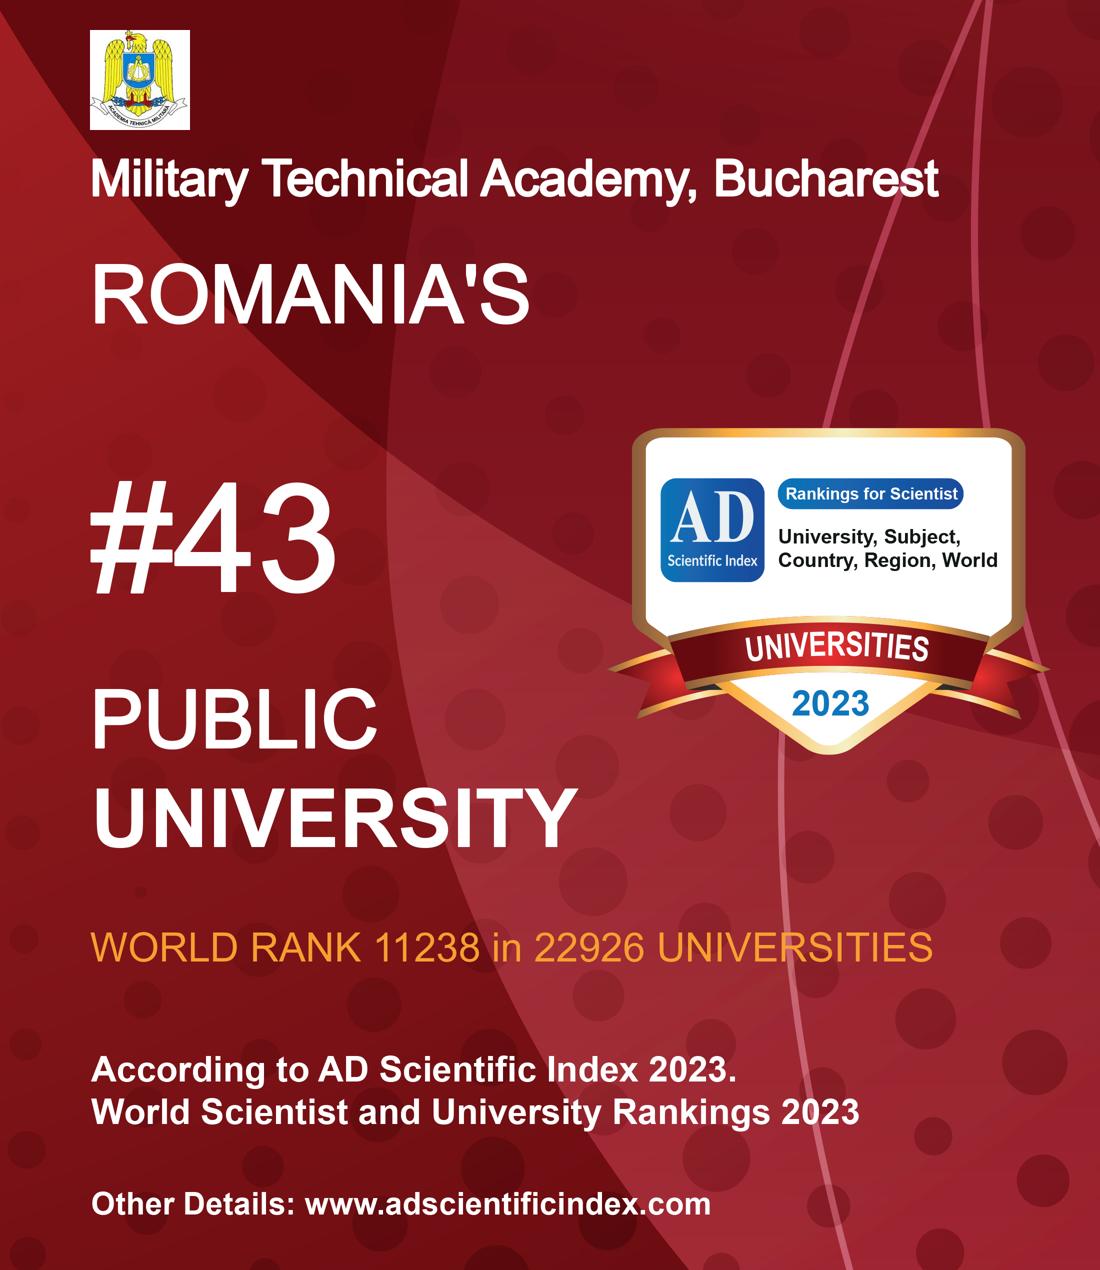 Military Technical Academy, Bucharest